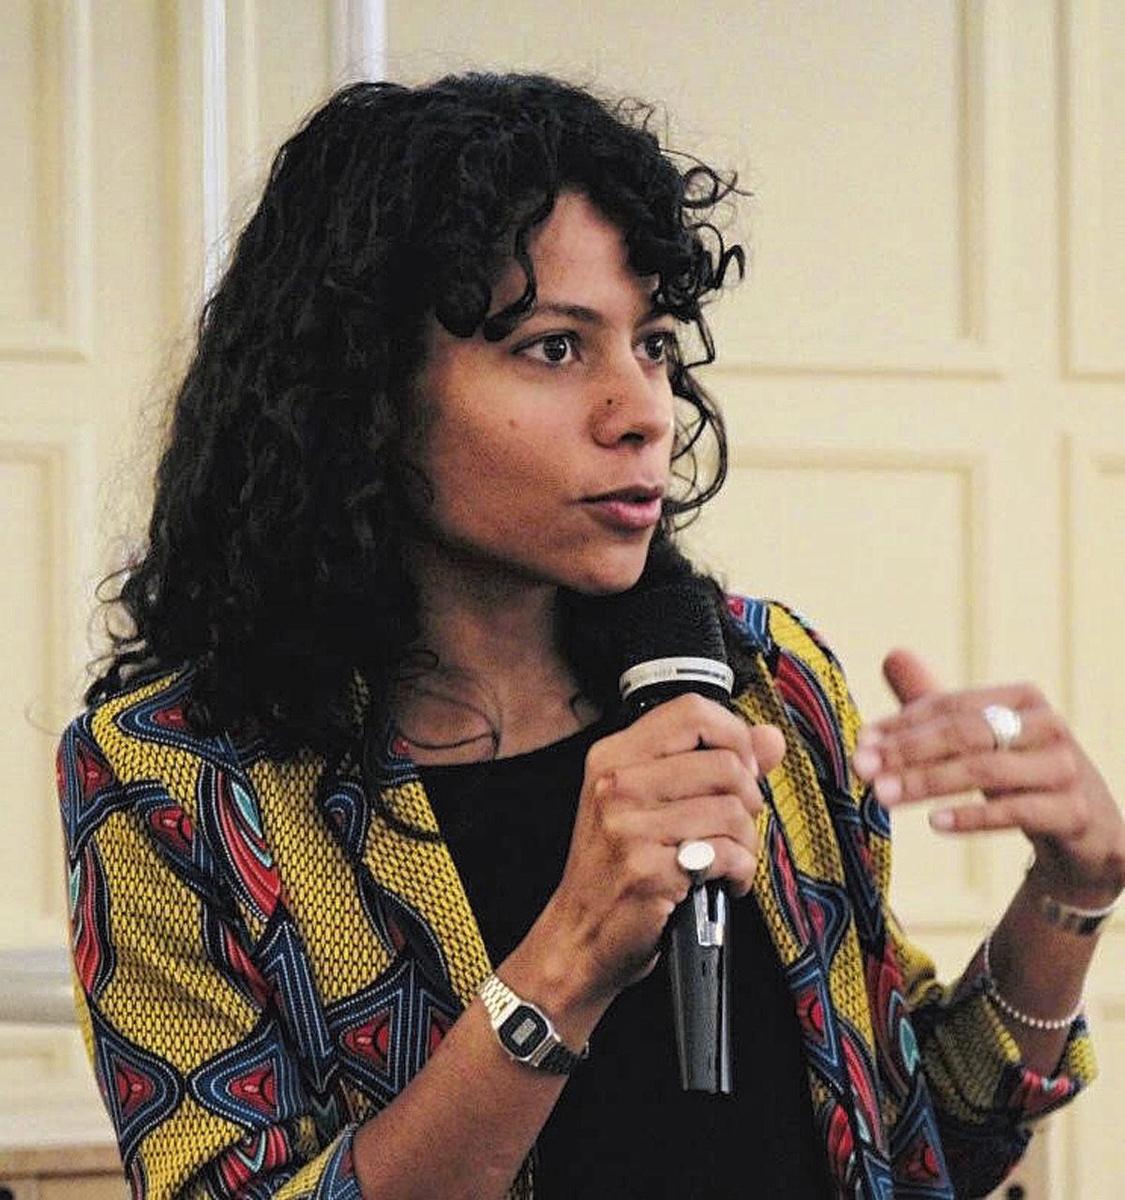 Emilia Roig, fondatrice du Center for Intersectional Justice (CIJ) à Berlin, financé par l'Open Society Foundation et la Guerrilla Foundation.